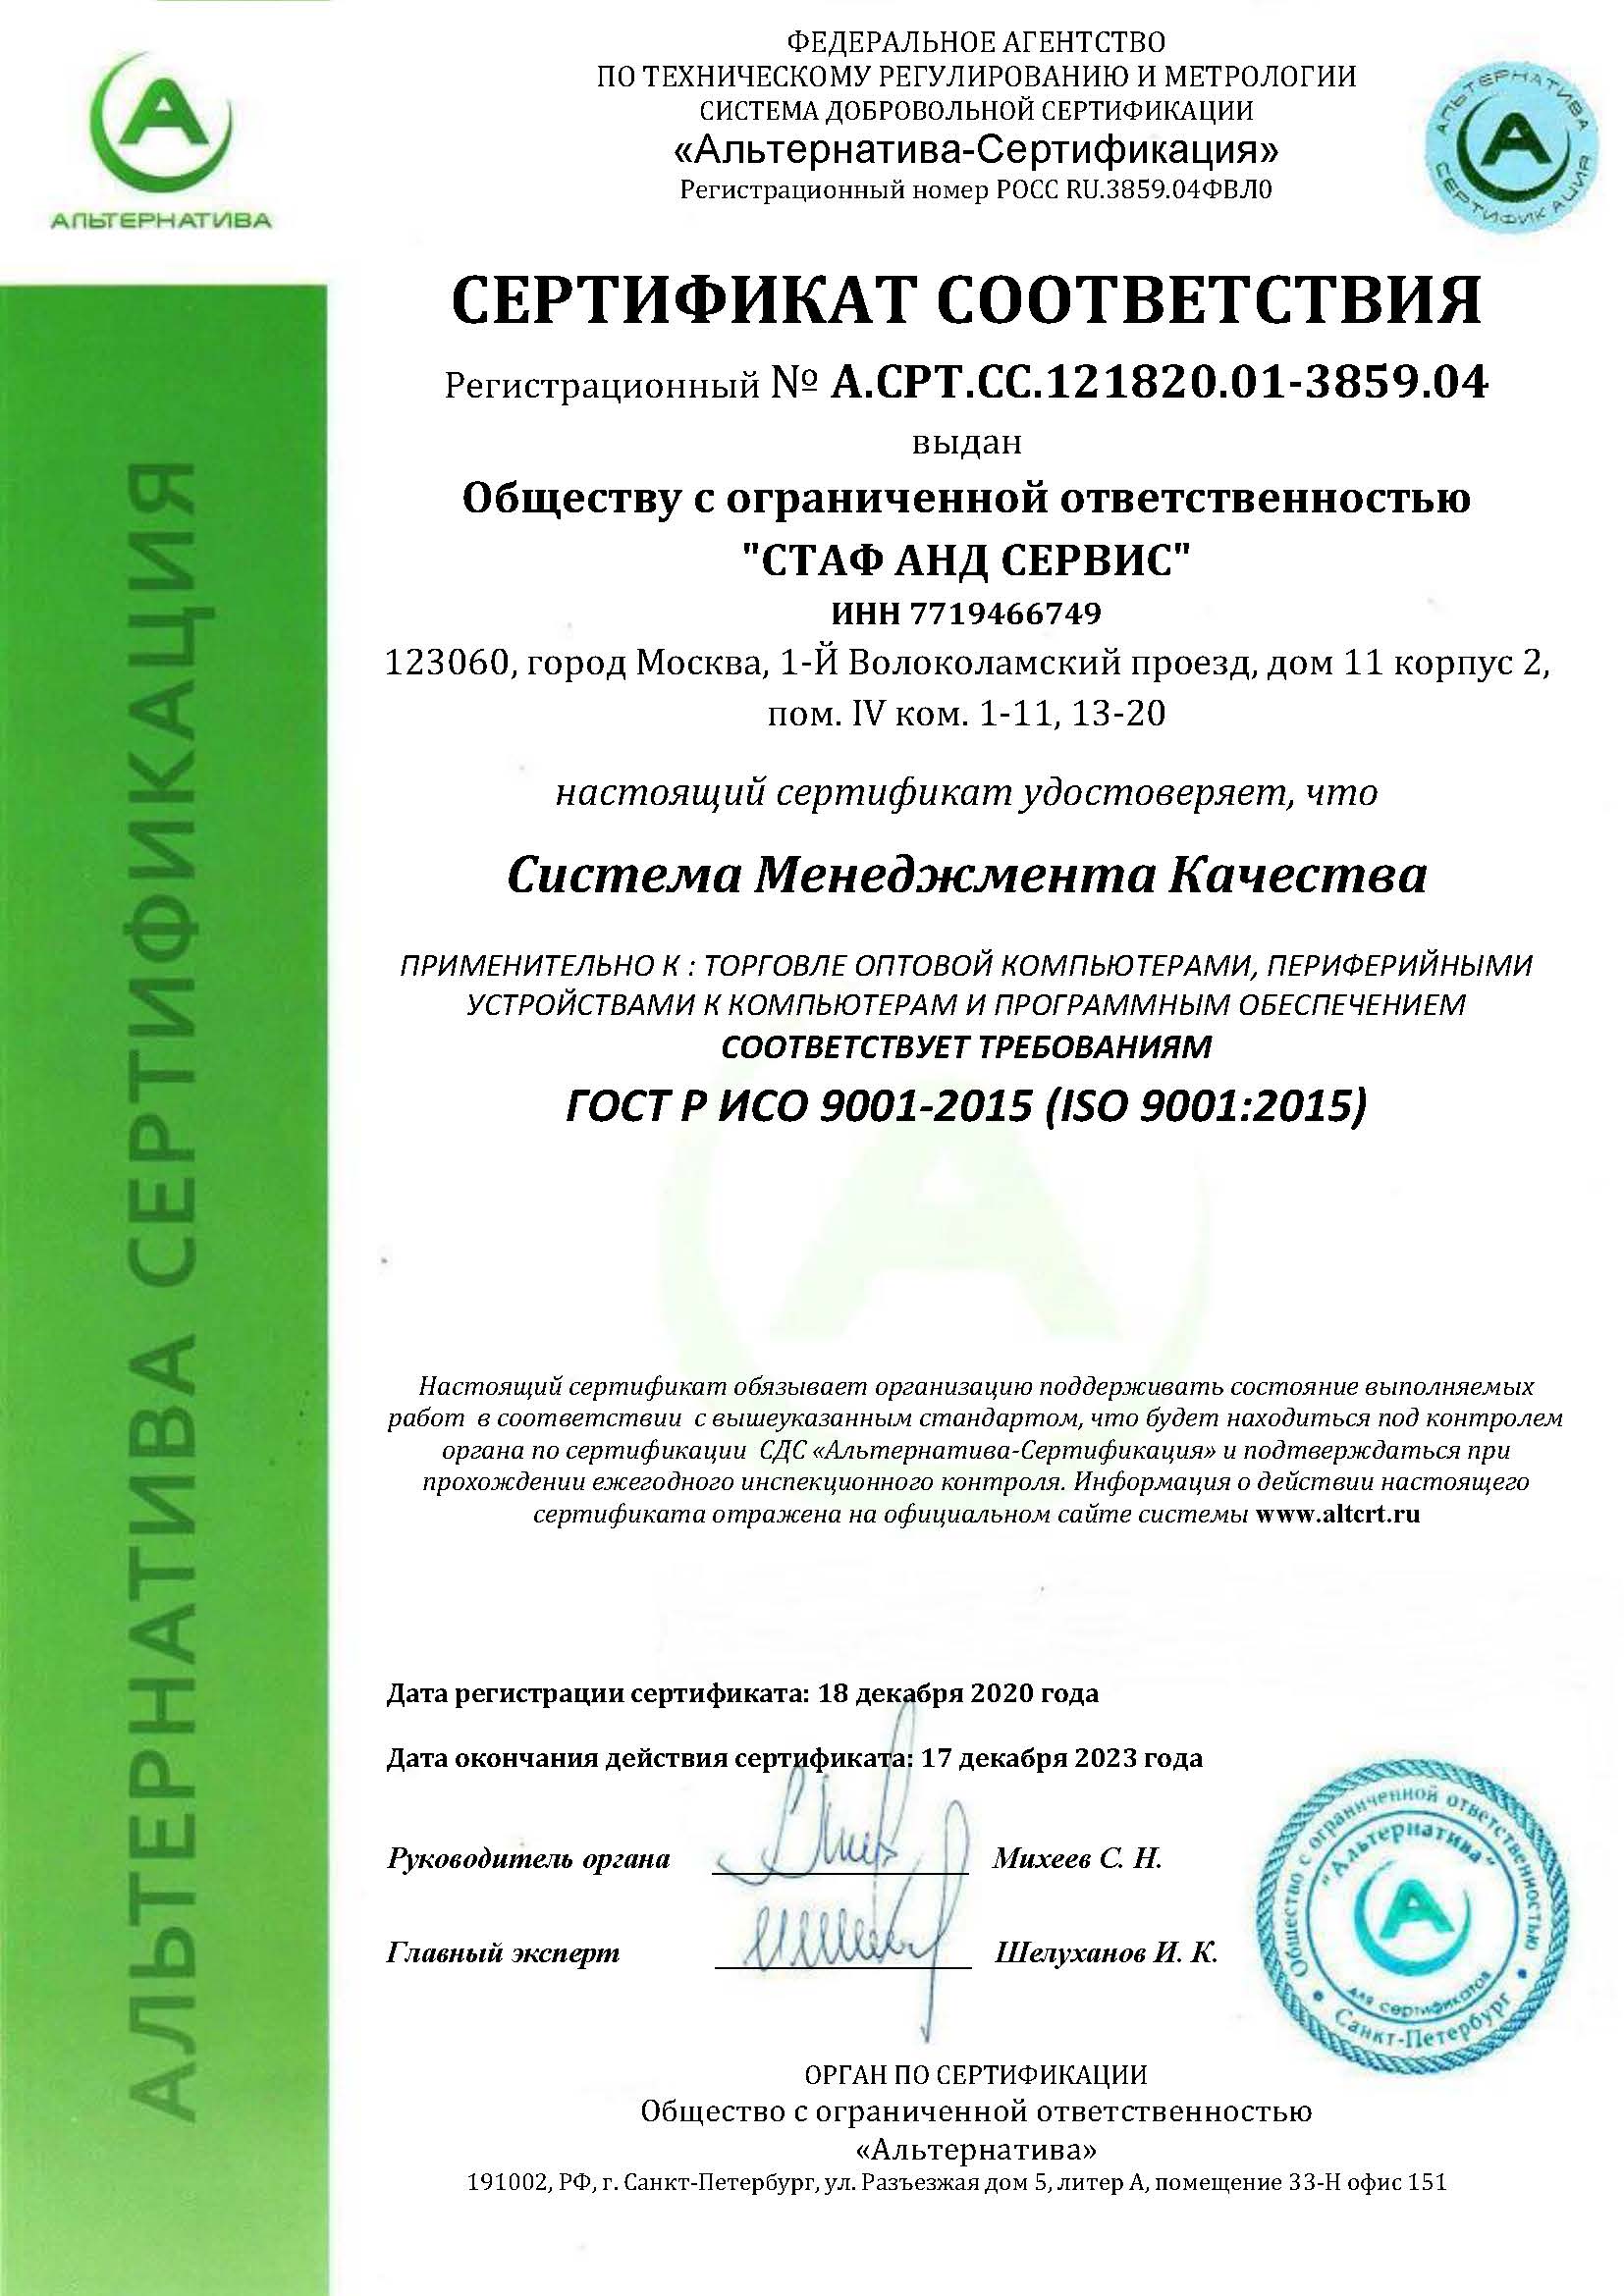 сертификат Стаф анд Сервис ISO 9001:2015